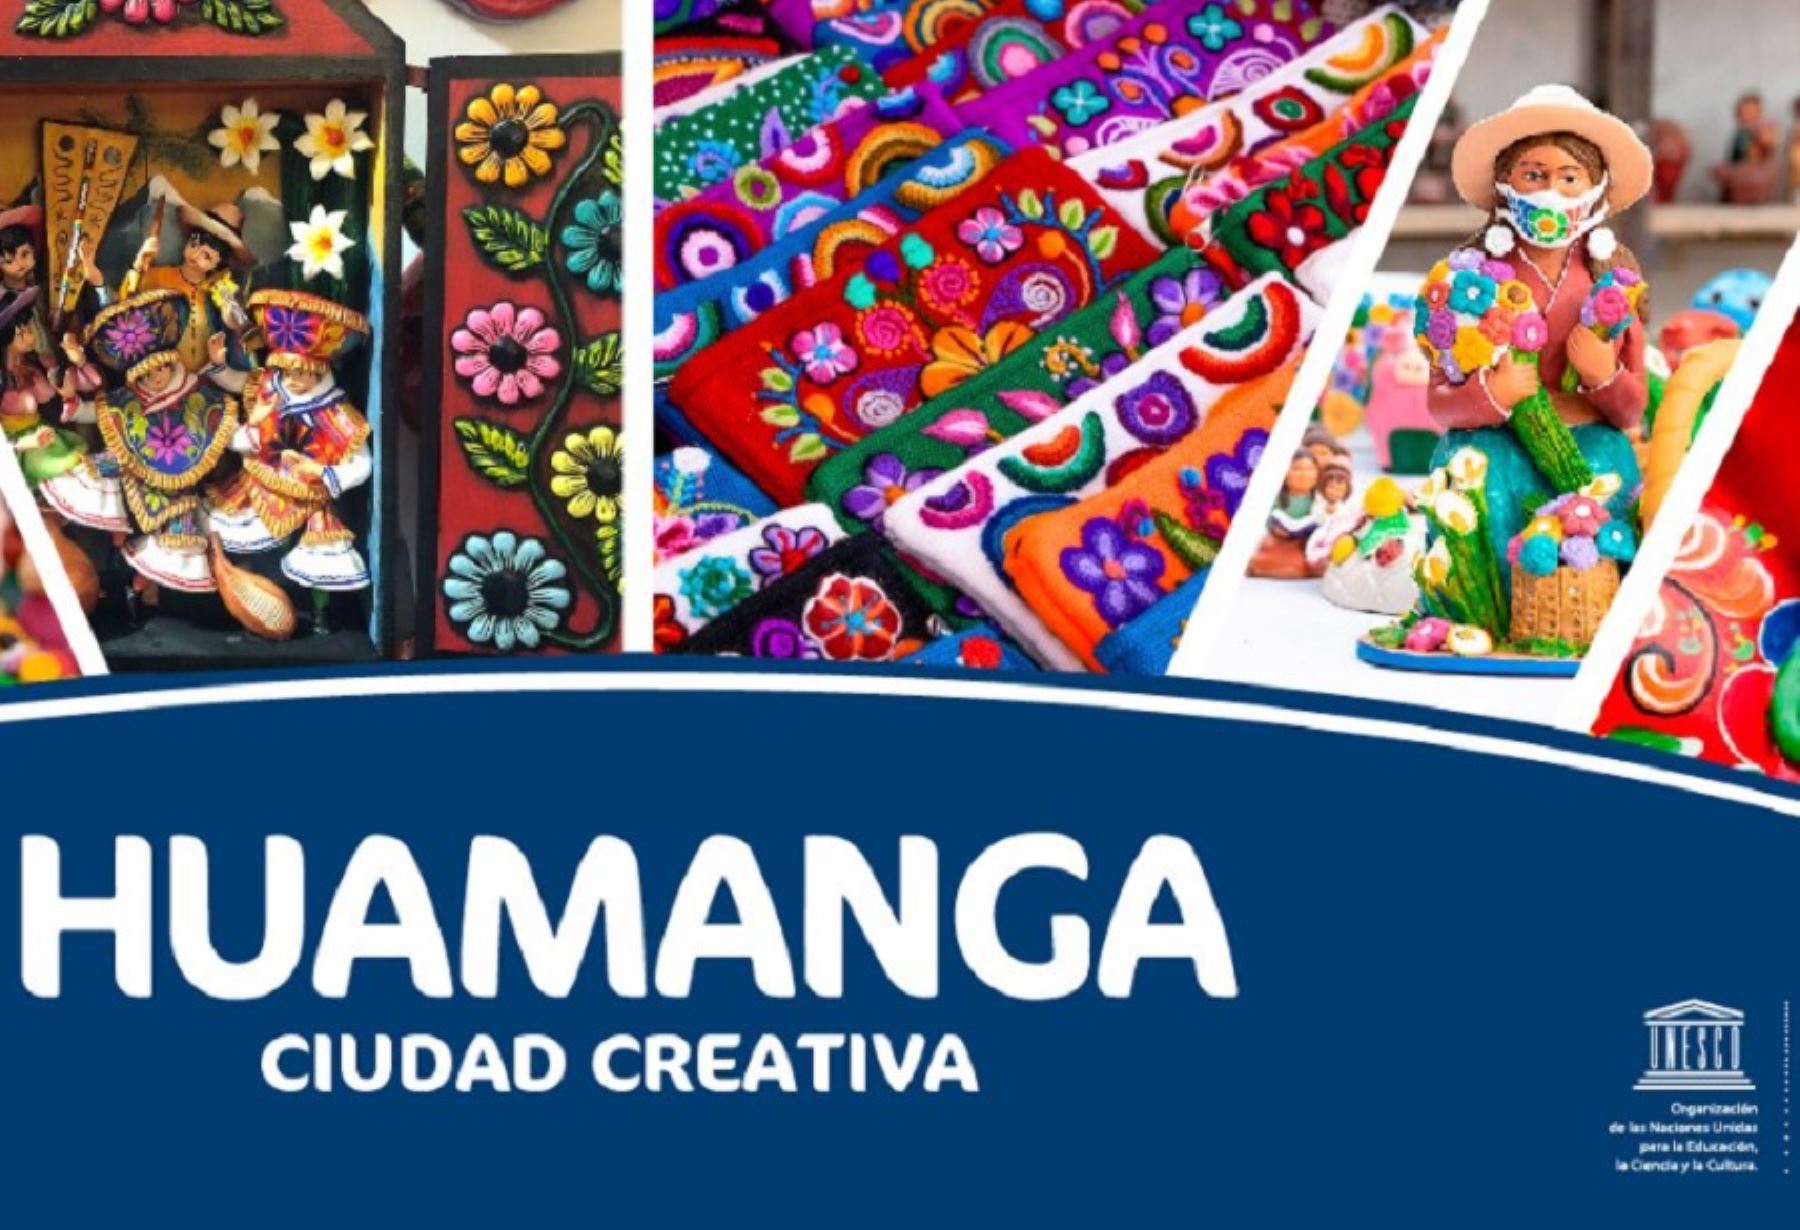 Huamanga integra la Red de Ciudades Creativas de la Unesco desde el 30 de octubre de 2019.